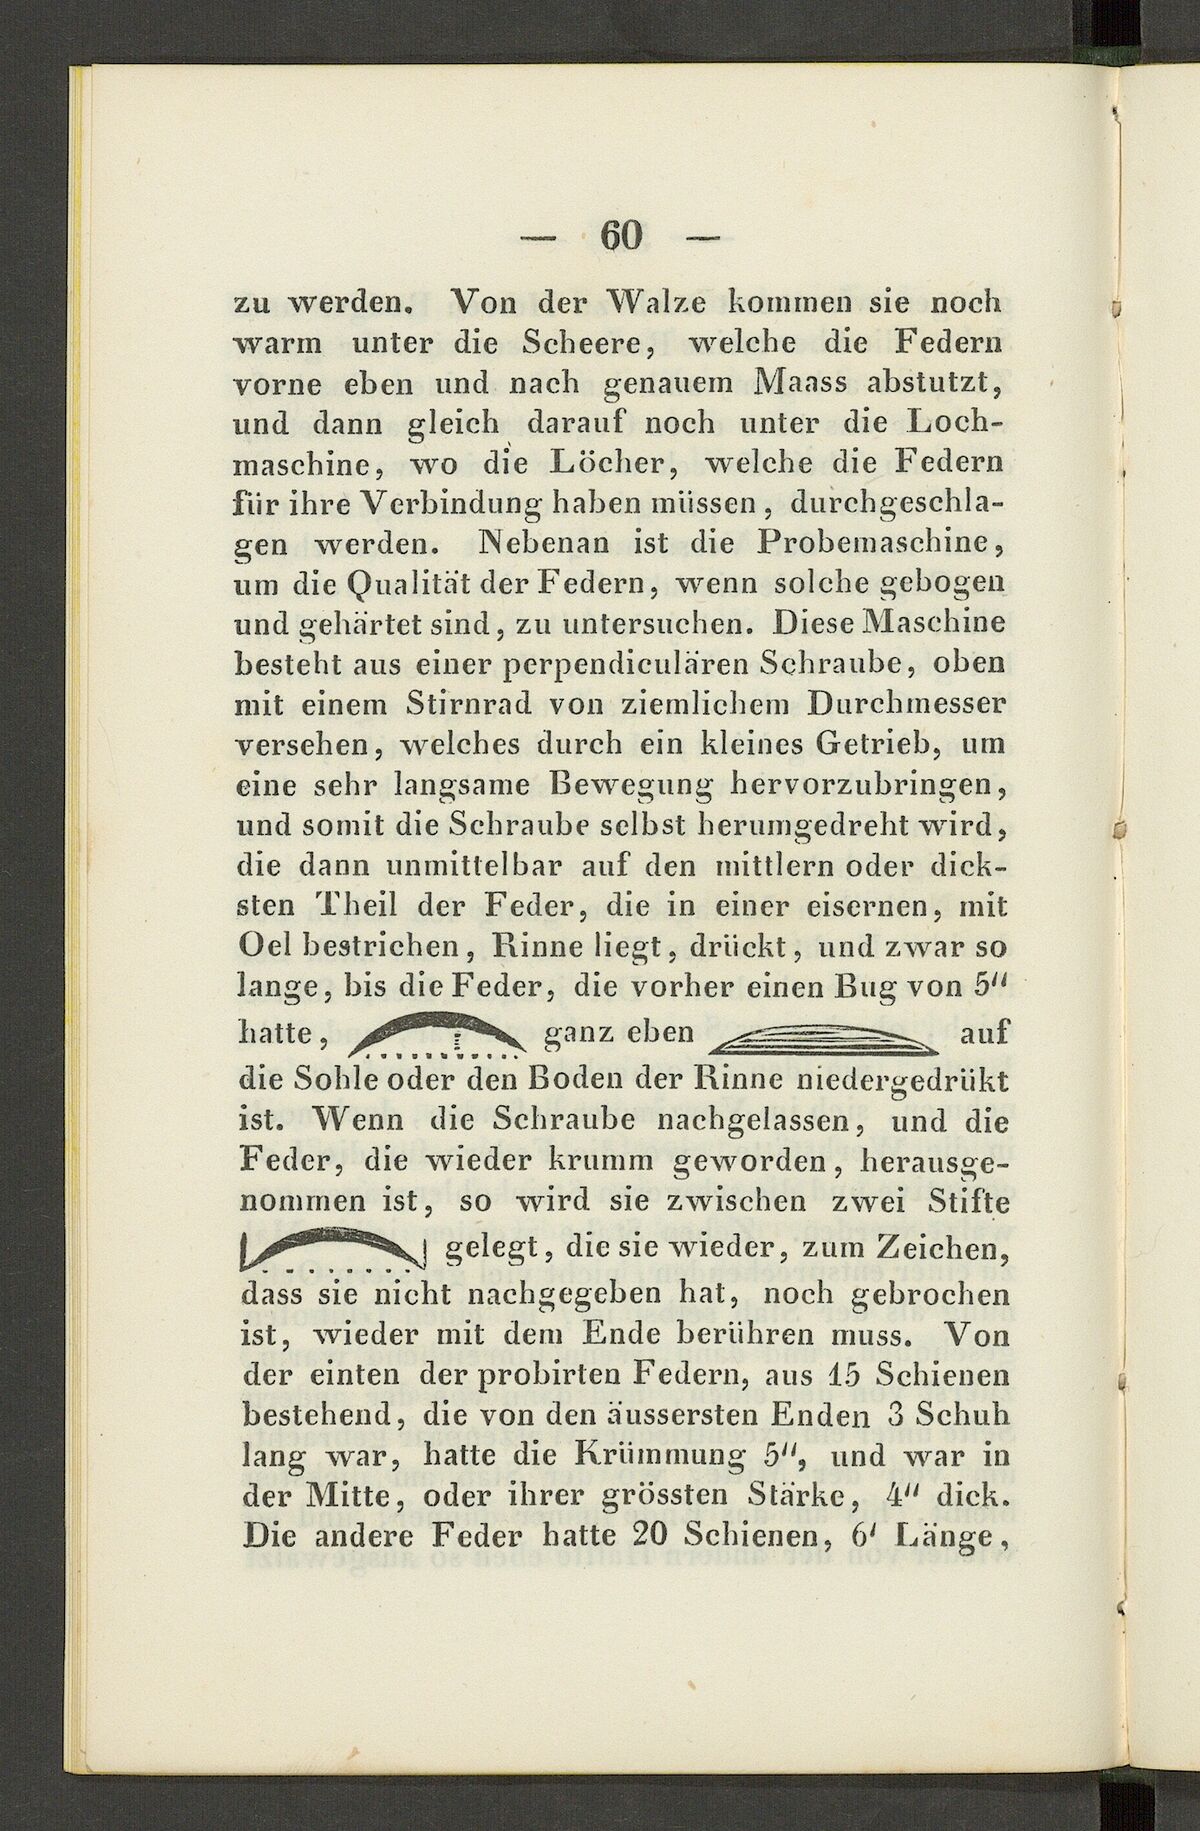 GFD 3/230: Skizzen von Blattfedern (Fischers Reisetagebuch 1846, Seite 60)